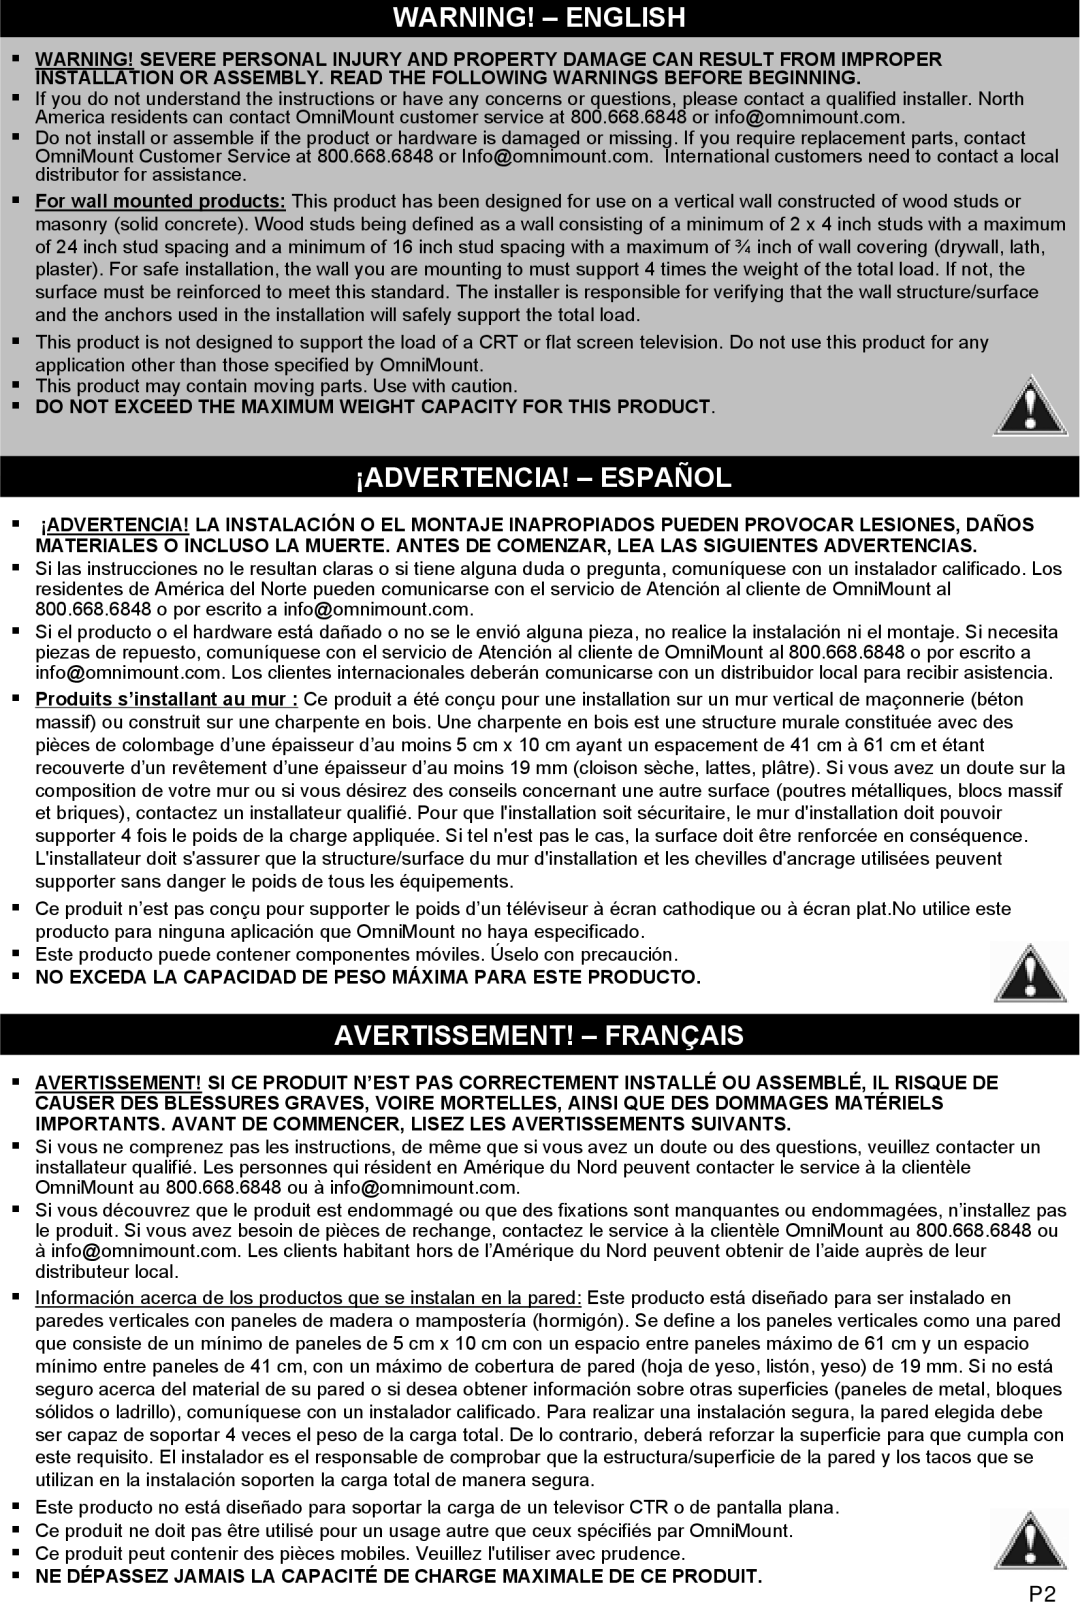 Omnimount OM10020 instruction manual Warning! - English, ¡Advertencia! - Español, Avertissement! - Français 